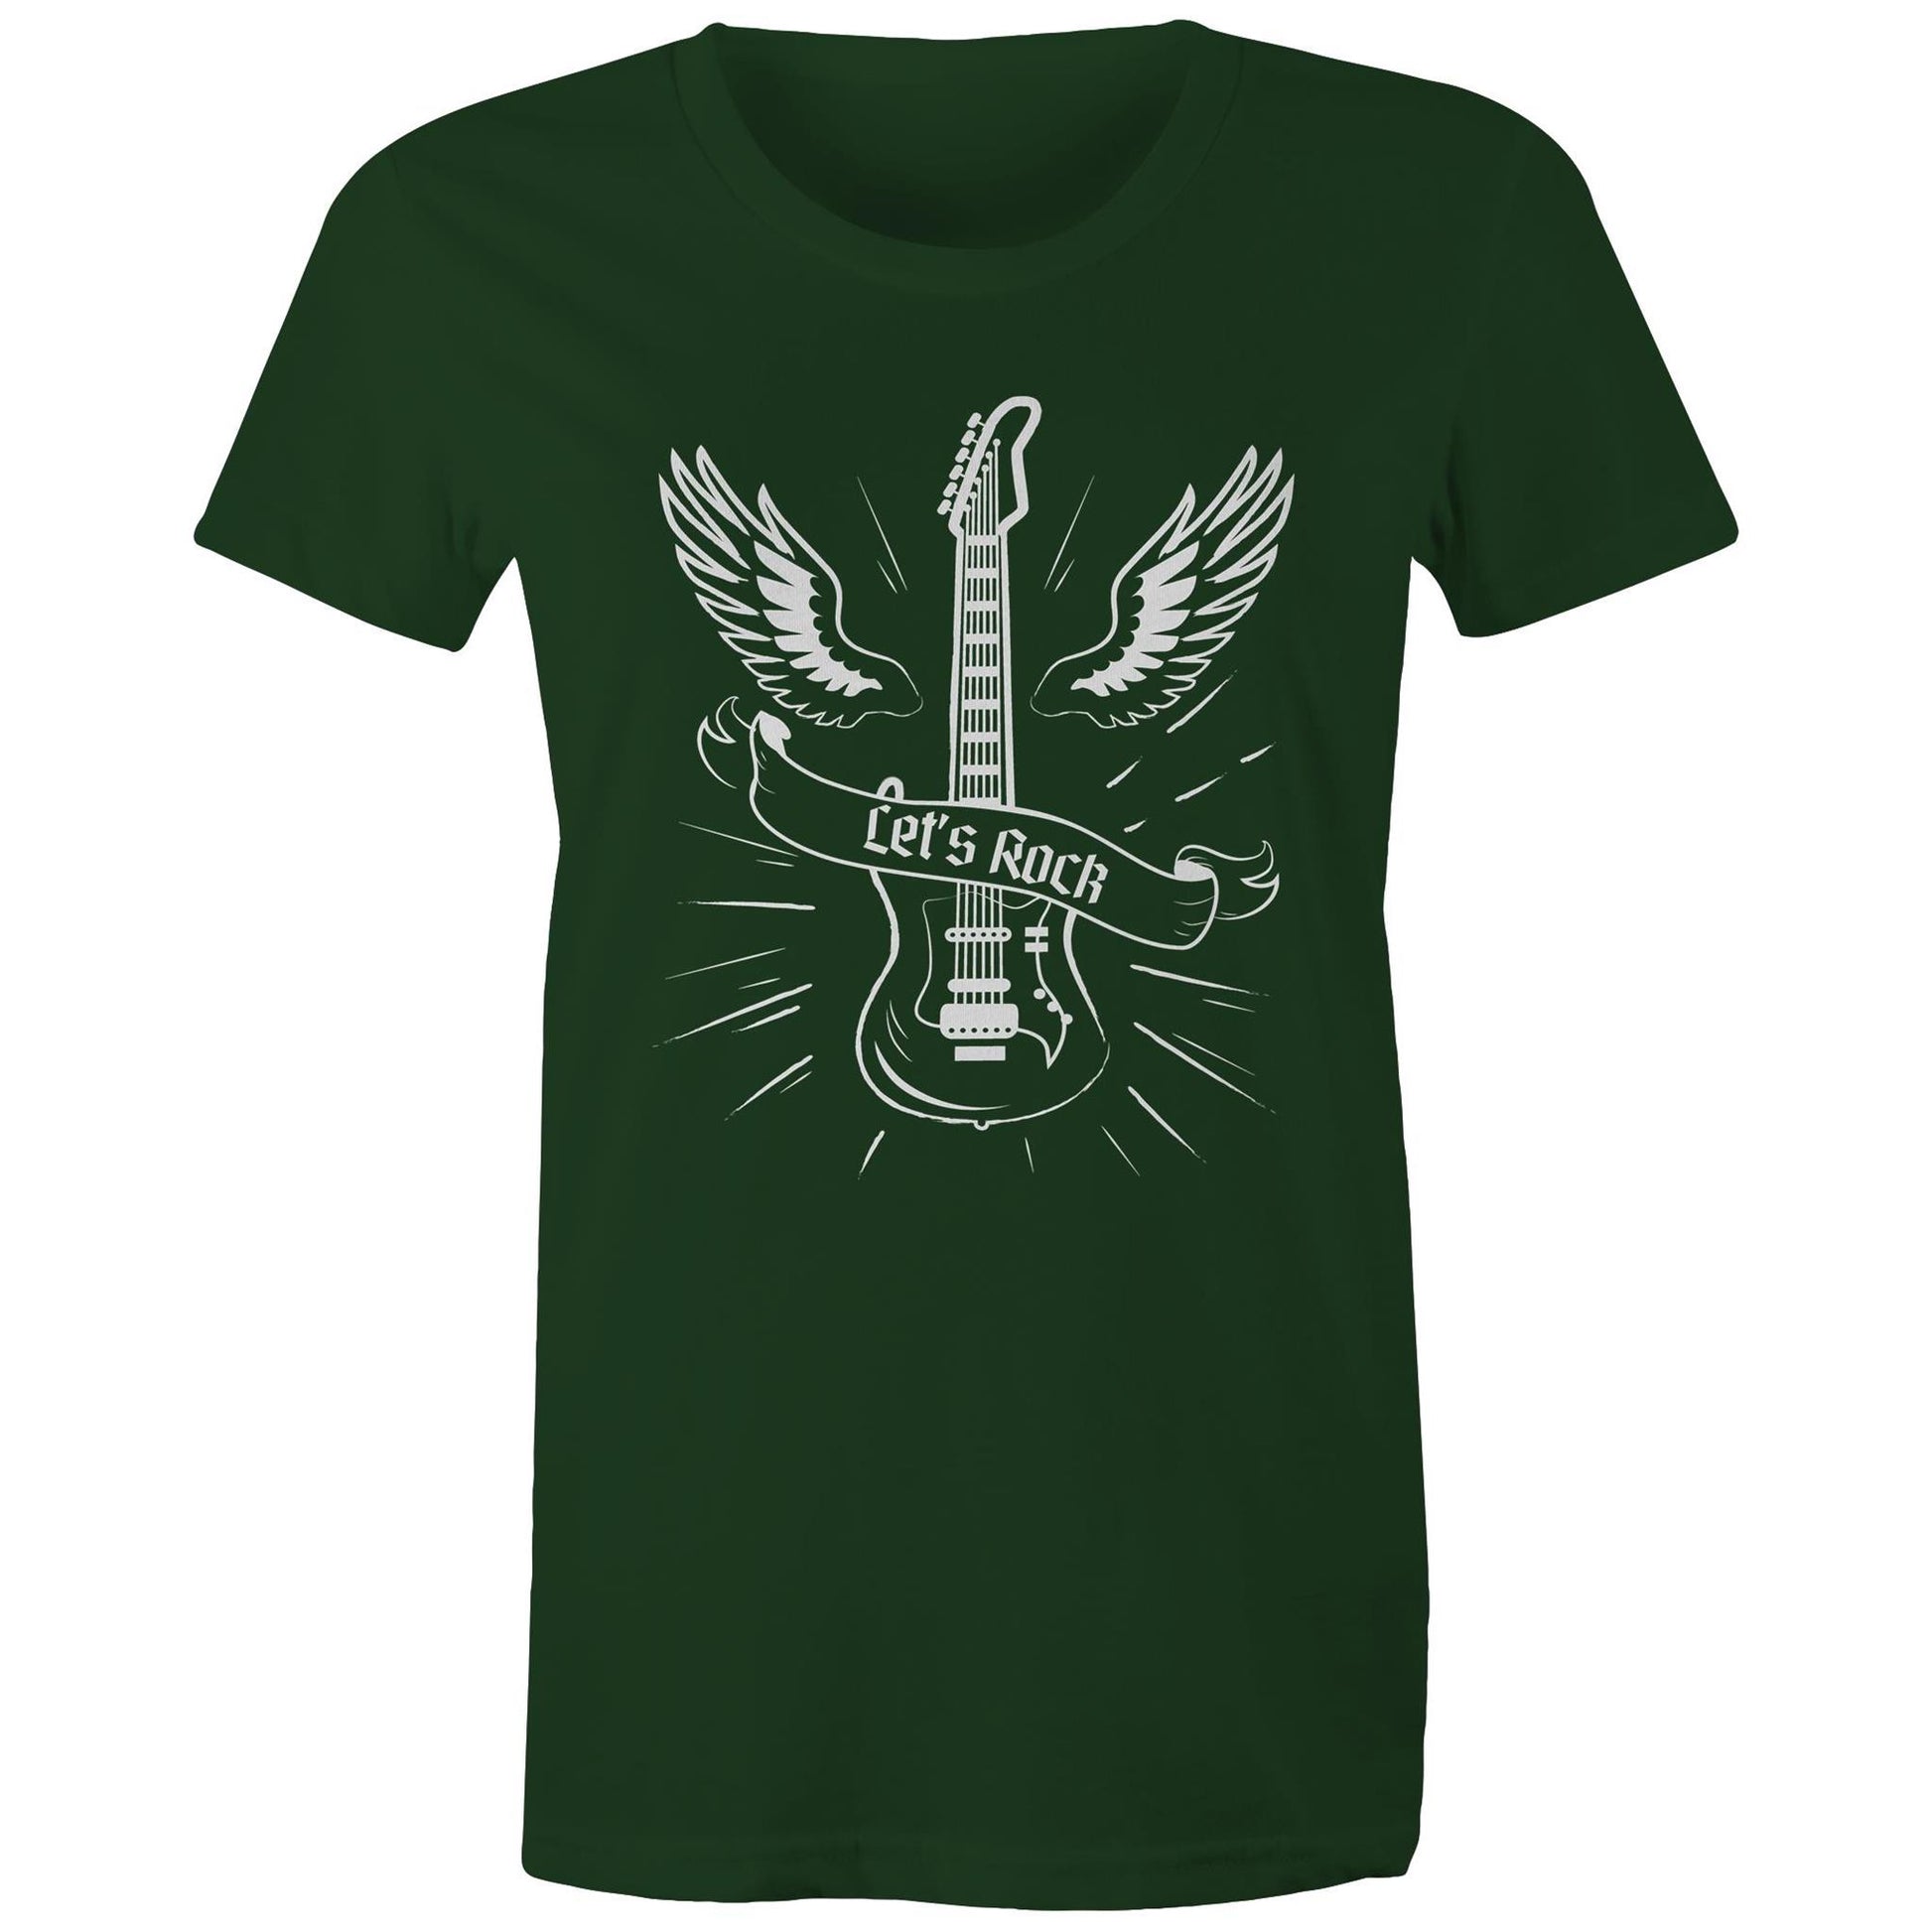 Let's Rock - Womens T-shirt Forest Green Womens T-shirt Music